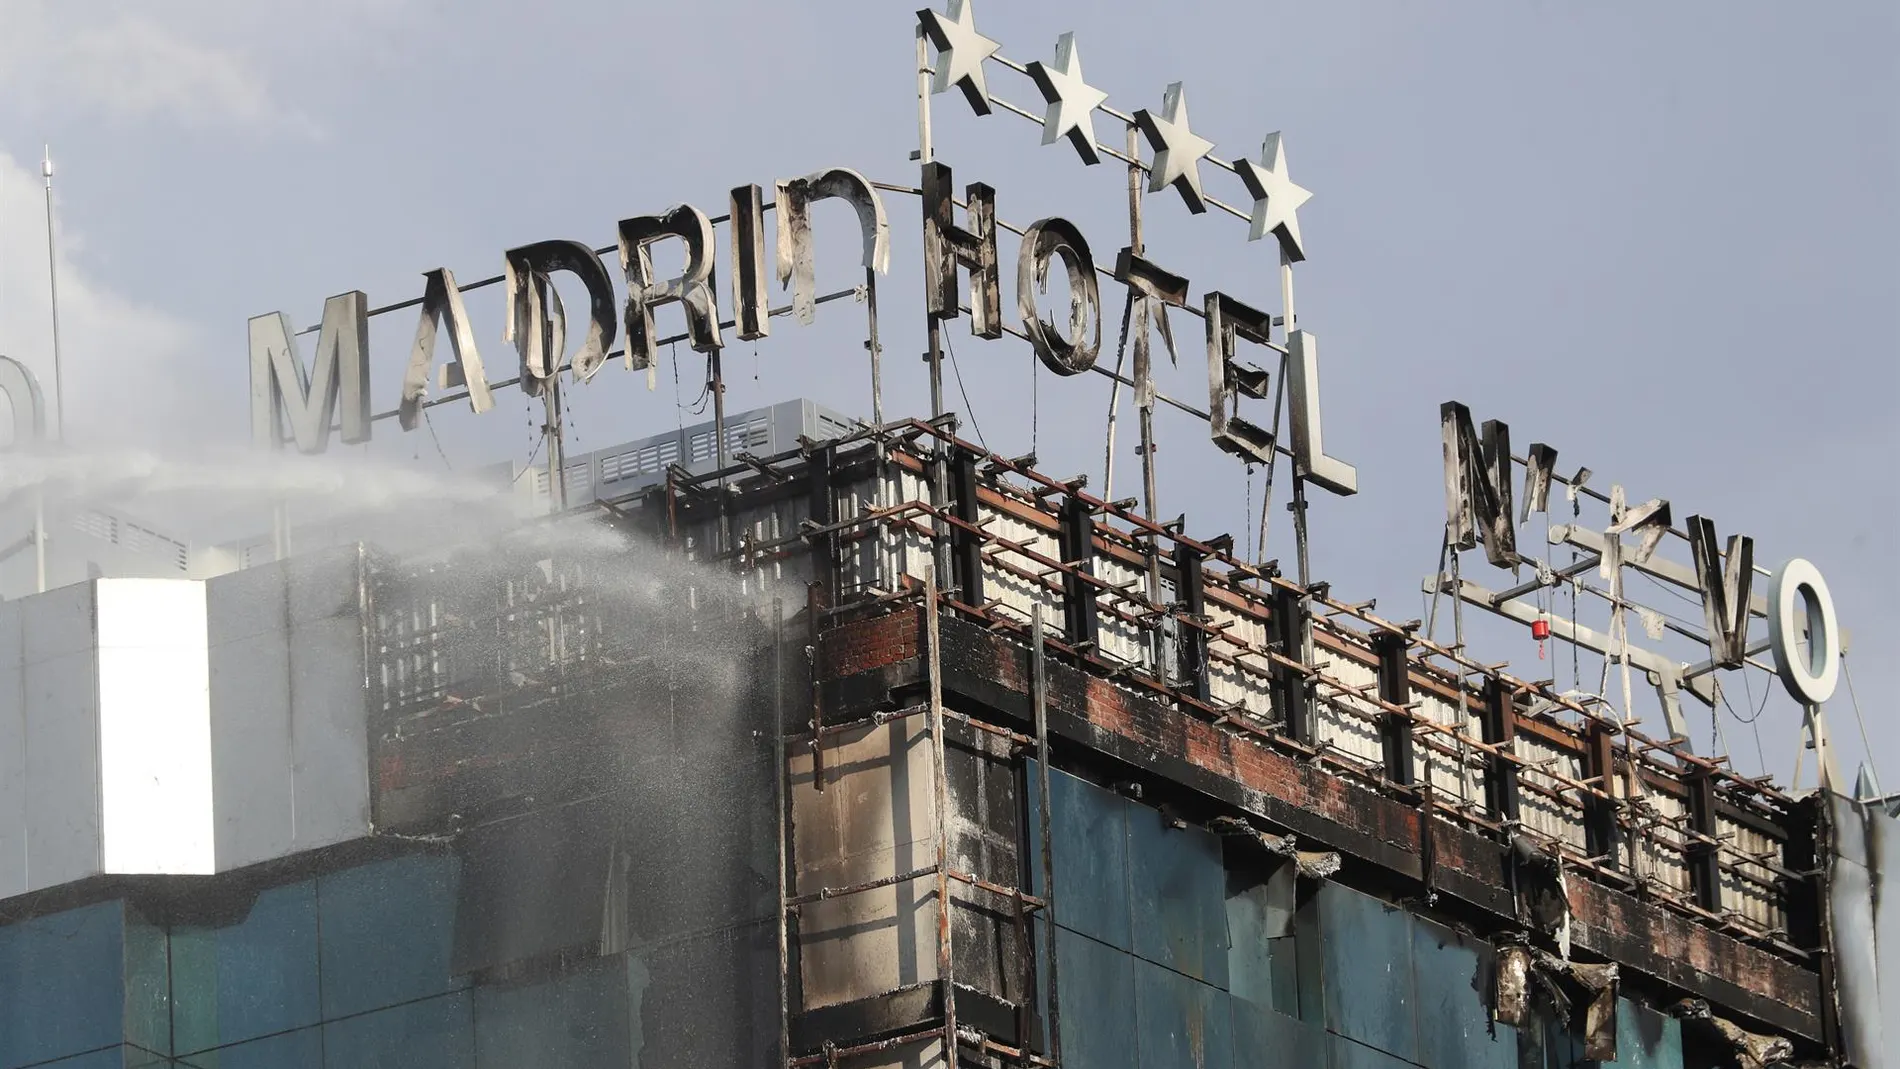  Bomberos extinguen las llamas tras un aparatoso incendio en la fachada exterior del Hotel Nuevo Madrid.